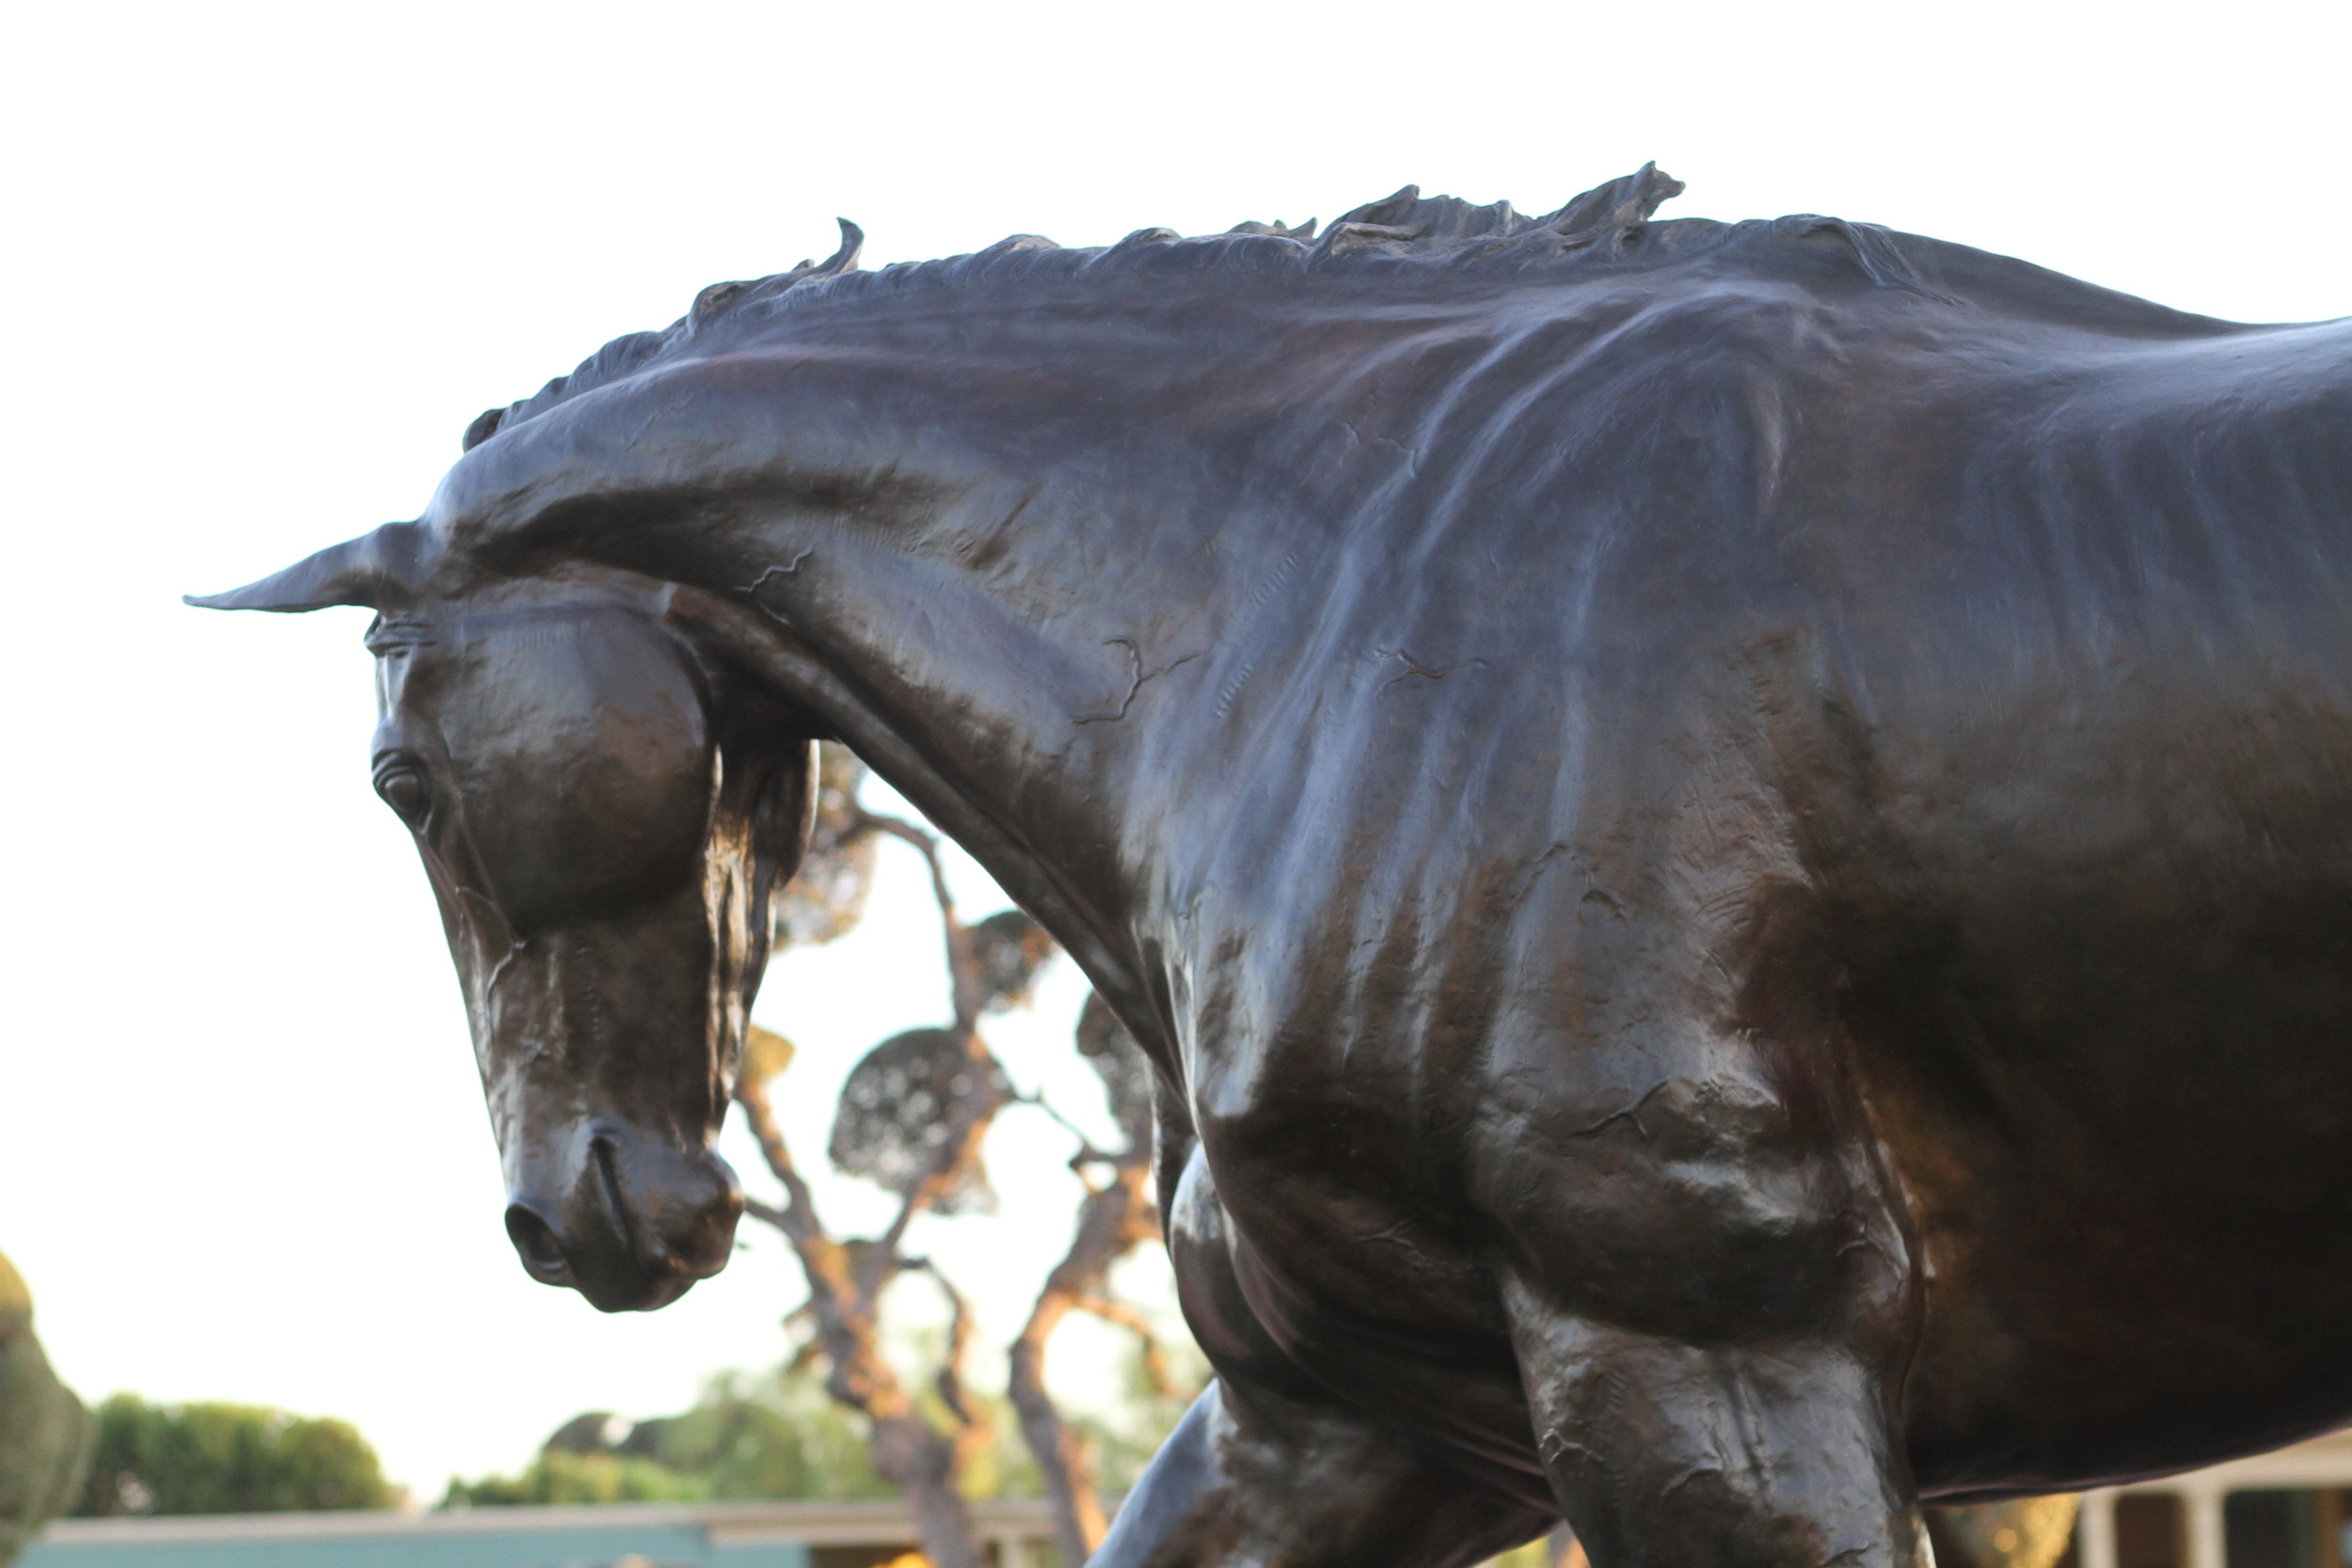 horse-statue-bronze-sculpture-zenyatta